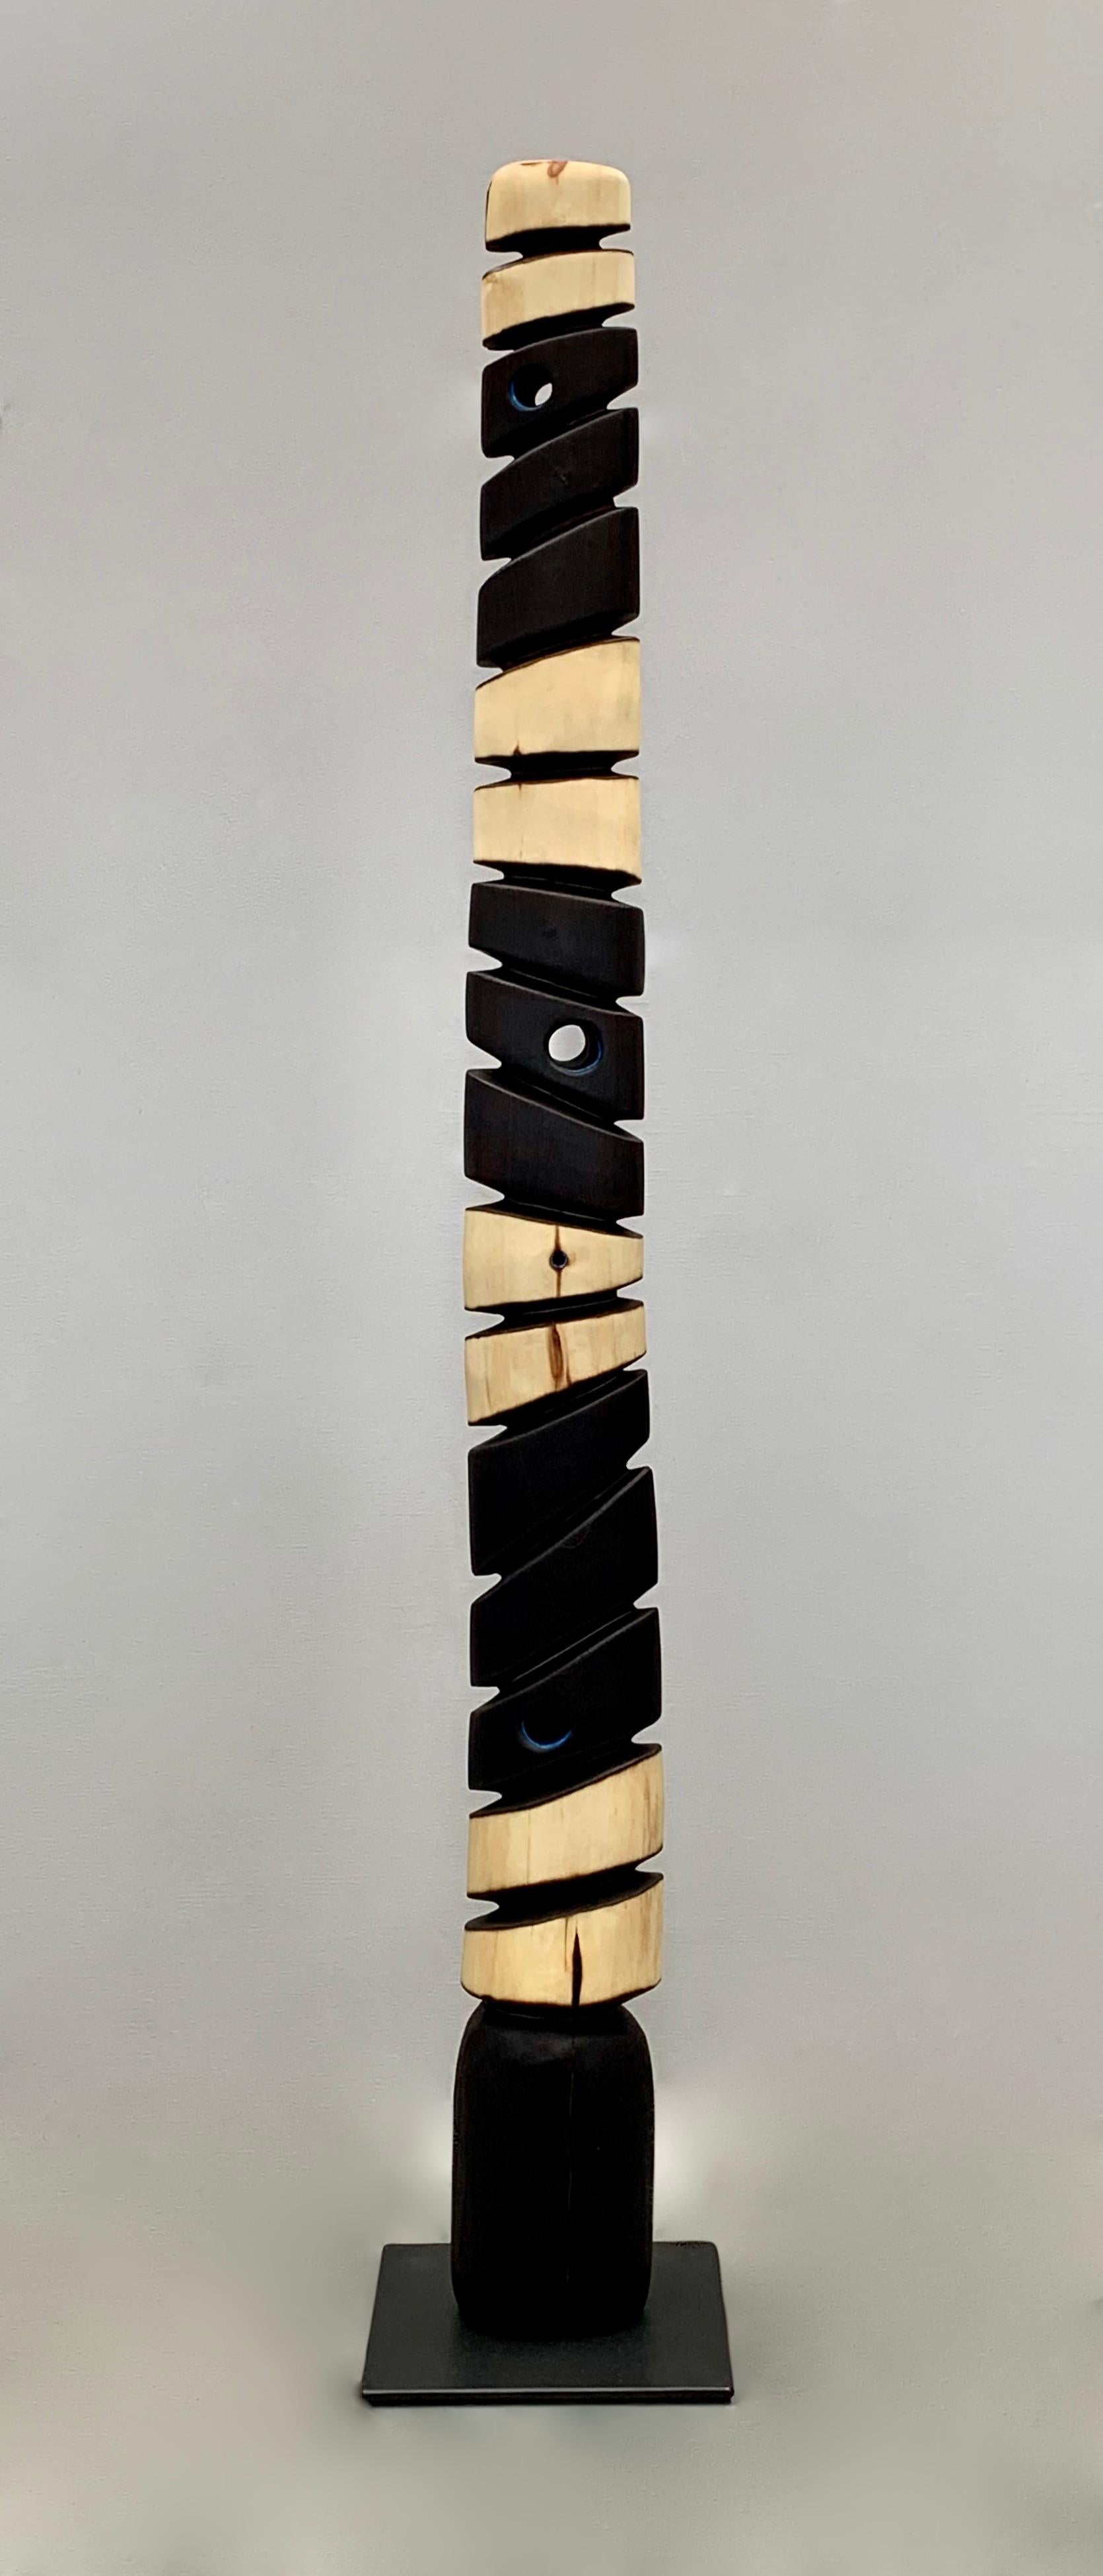 Greg Joubert Abstract Sculpture - Rhythmic